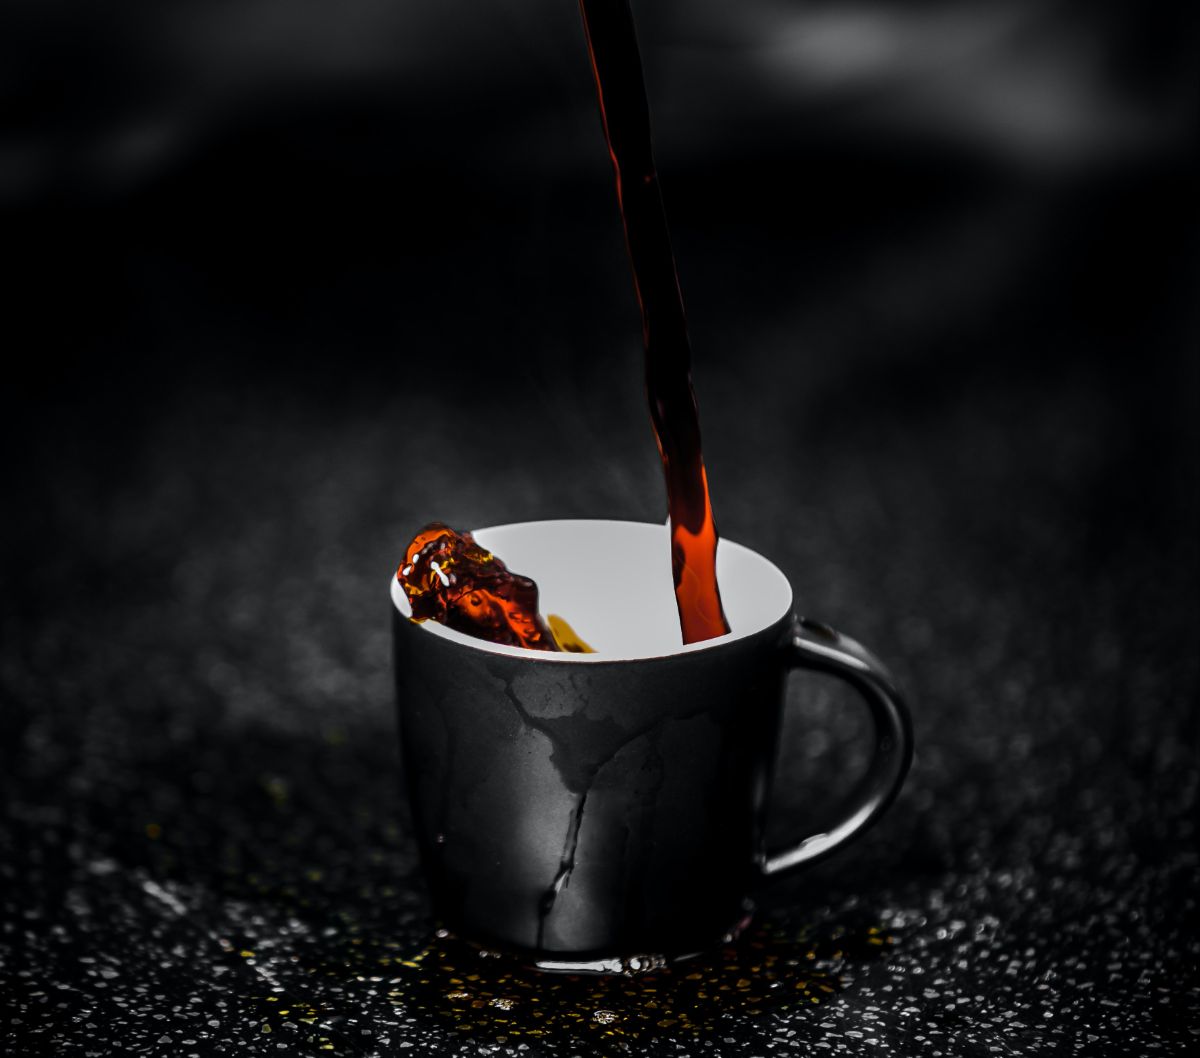 Manfaat ini bisa muncul ketika kopi dikonsumsi dalam jumlah yang tidak berlebihan. Menurut Dr. Rezaie, kafein juga berpotensi memiliki dampak negatif pada usus Anda, yang dapat menyebabkan efek samping yang tidak diinginkan.